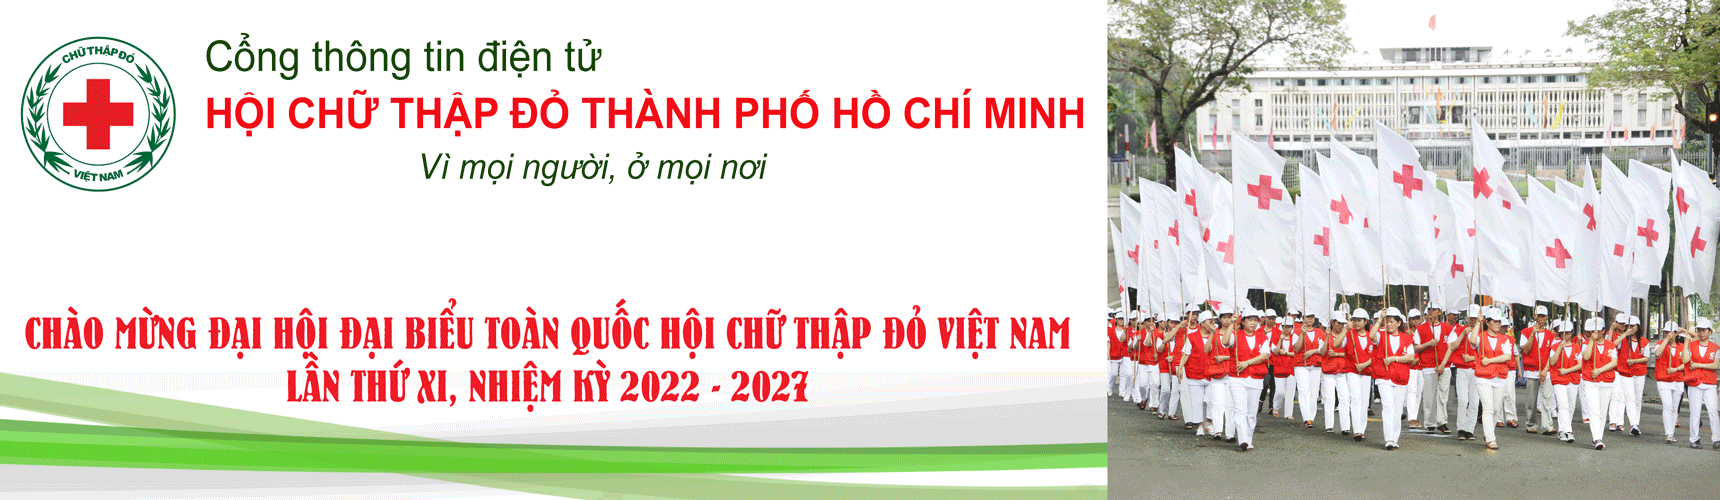 Hội Chữ thập đỏ Thành phố Hồ Chí Minh | Nơi yêu thương ở lại - Quận Bình Thạnh - Năm 2022